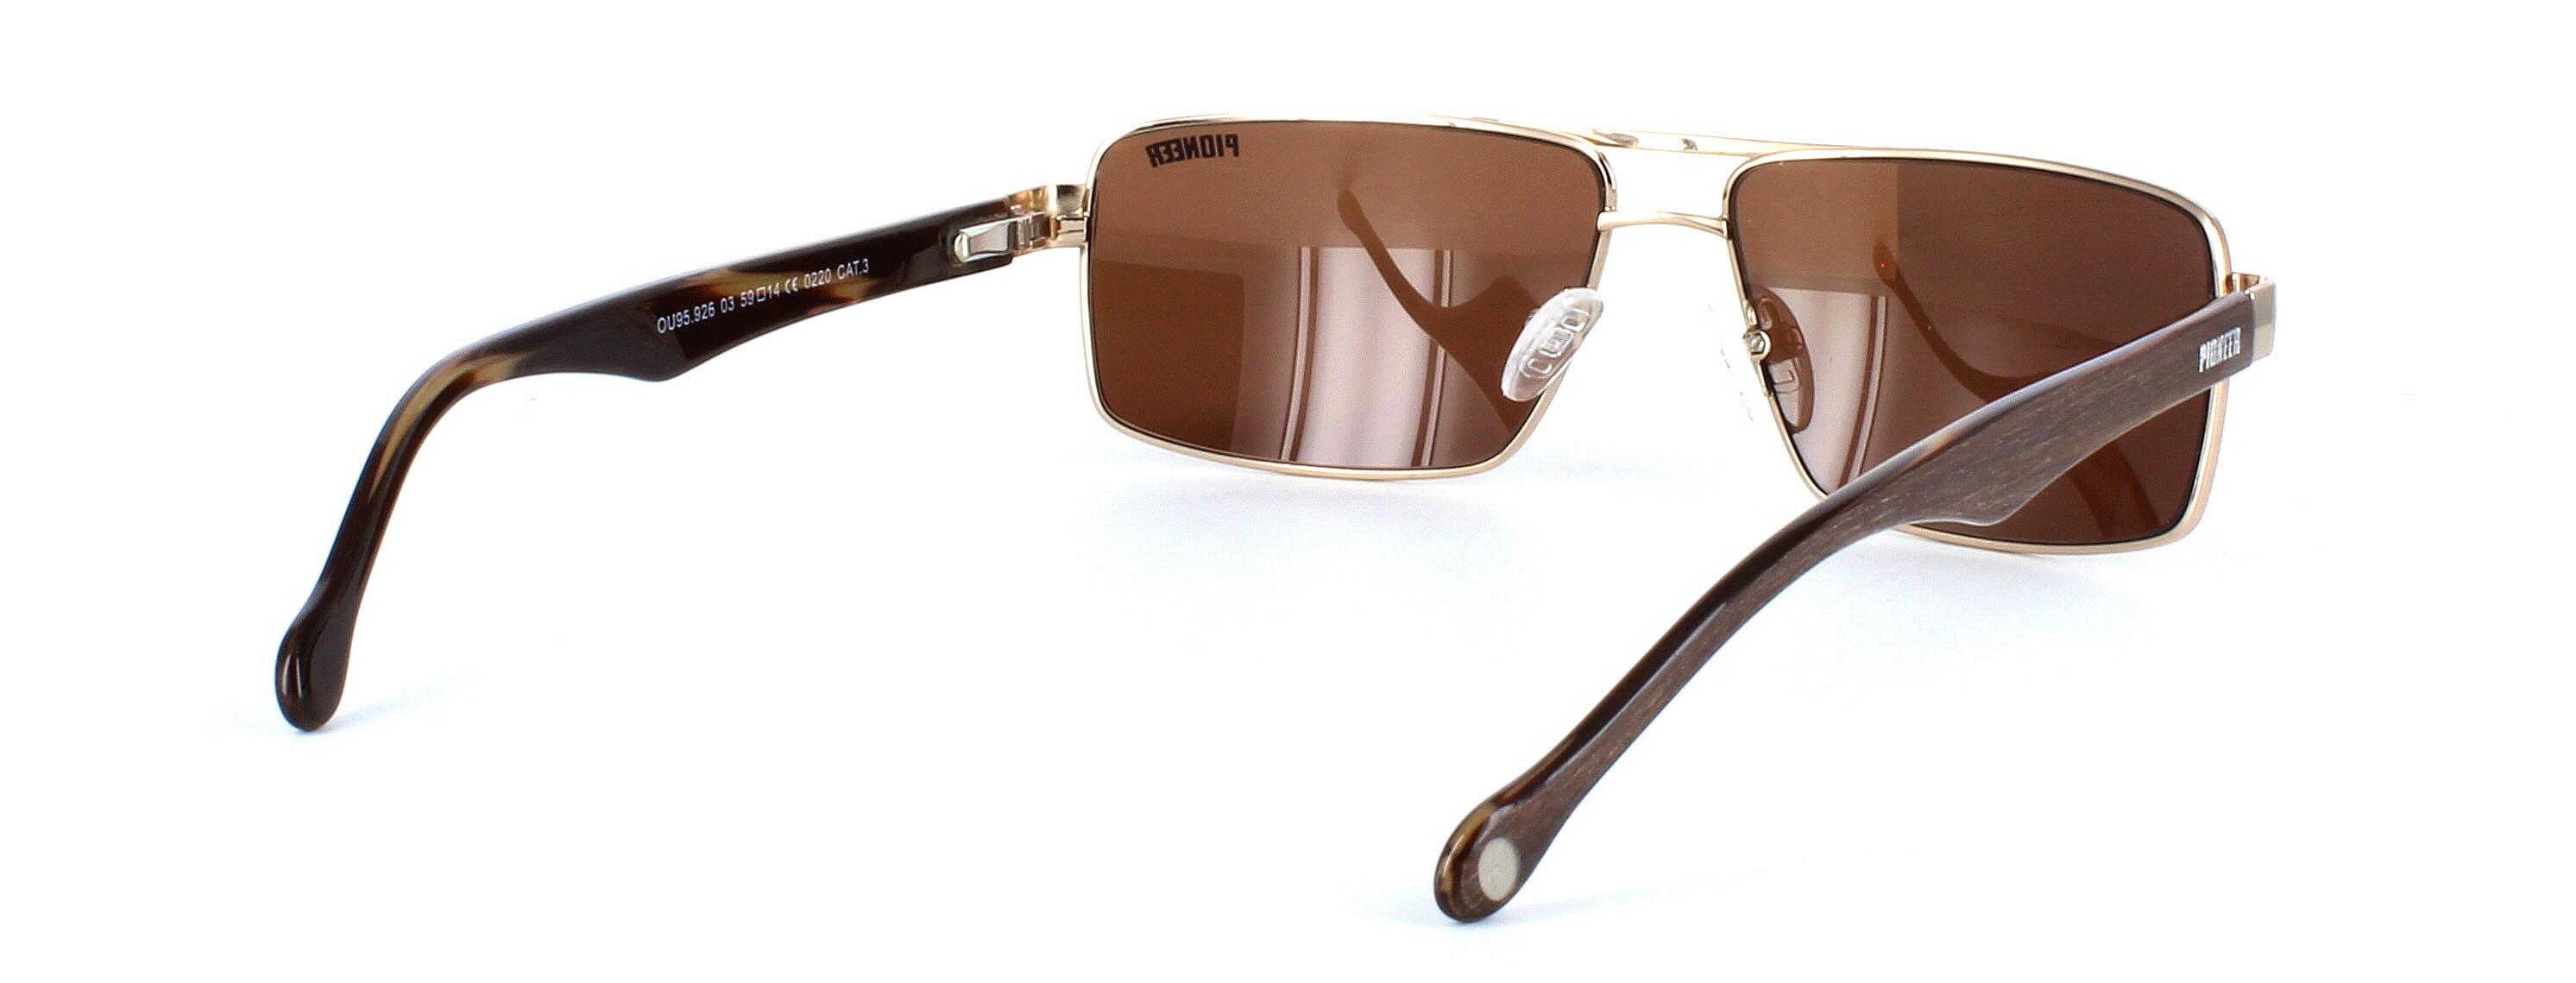 Odonata - Unisex aviator style prescription sunglasses in gold - image view 4